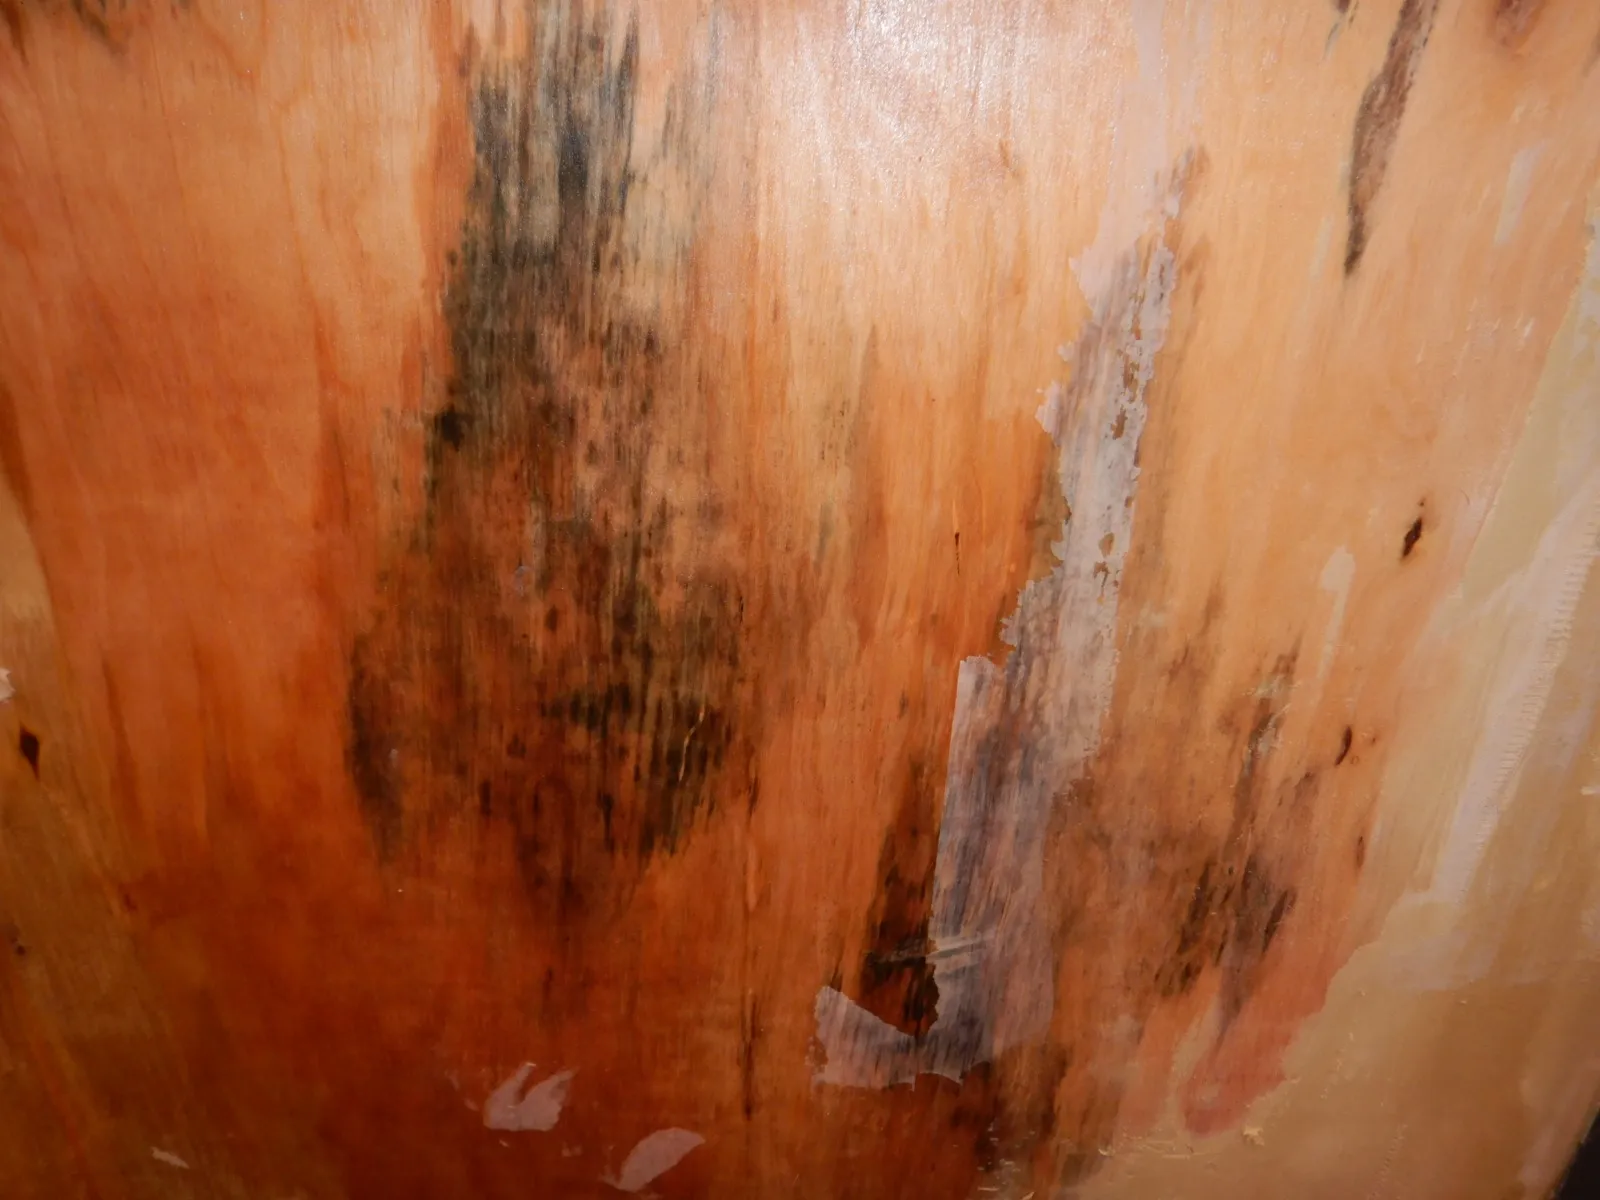 壁紙剥がし後濡れているコンパネ下地カビ